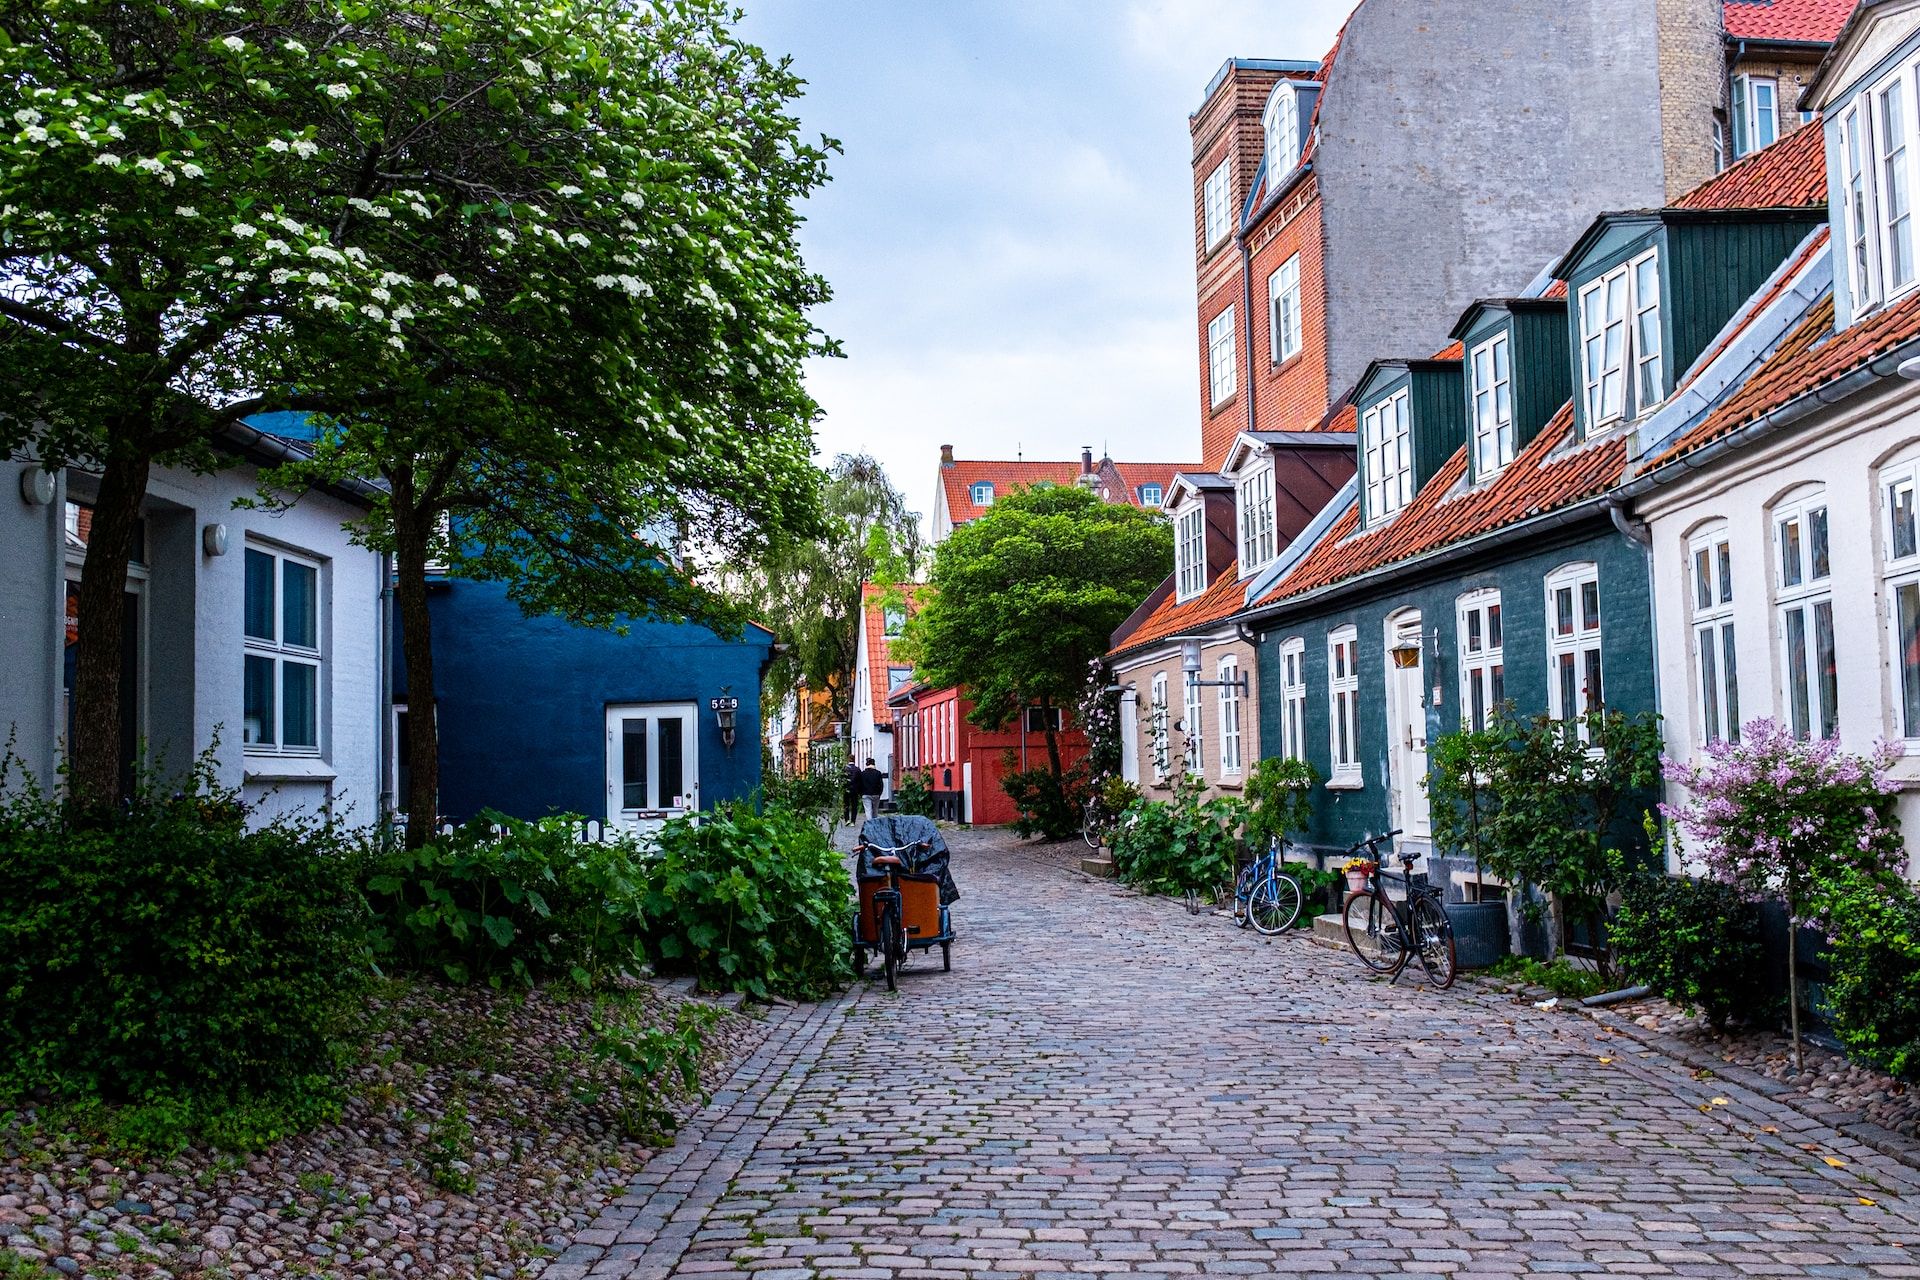 Colorful houses line the cobblestone streets of Møllestien, Aarhus, Denmark